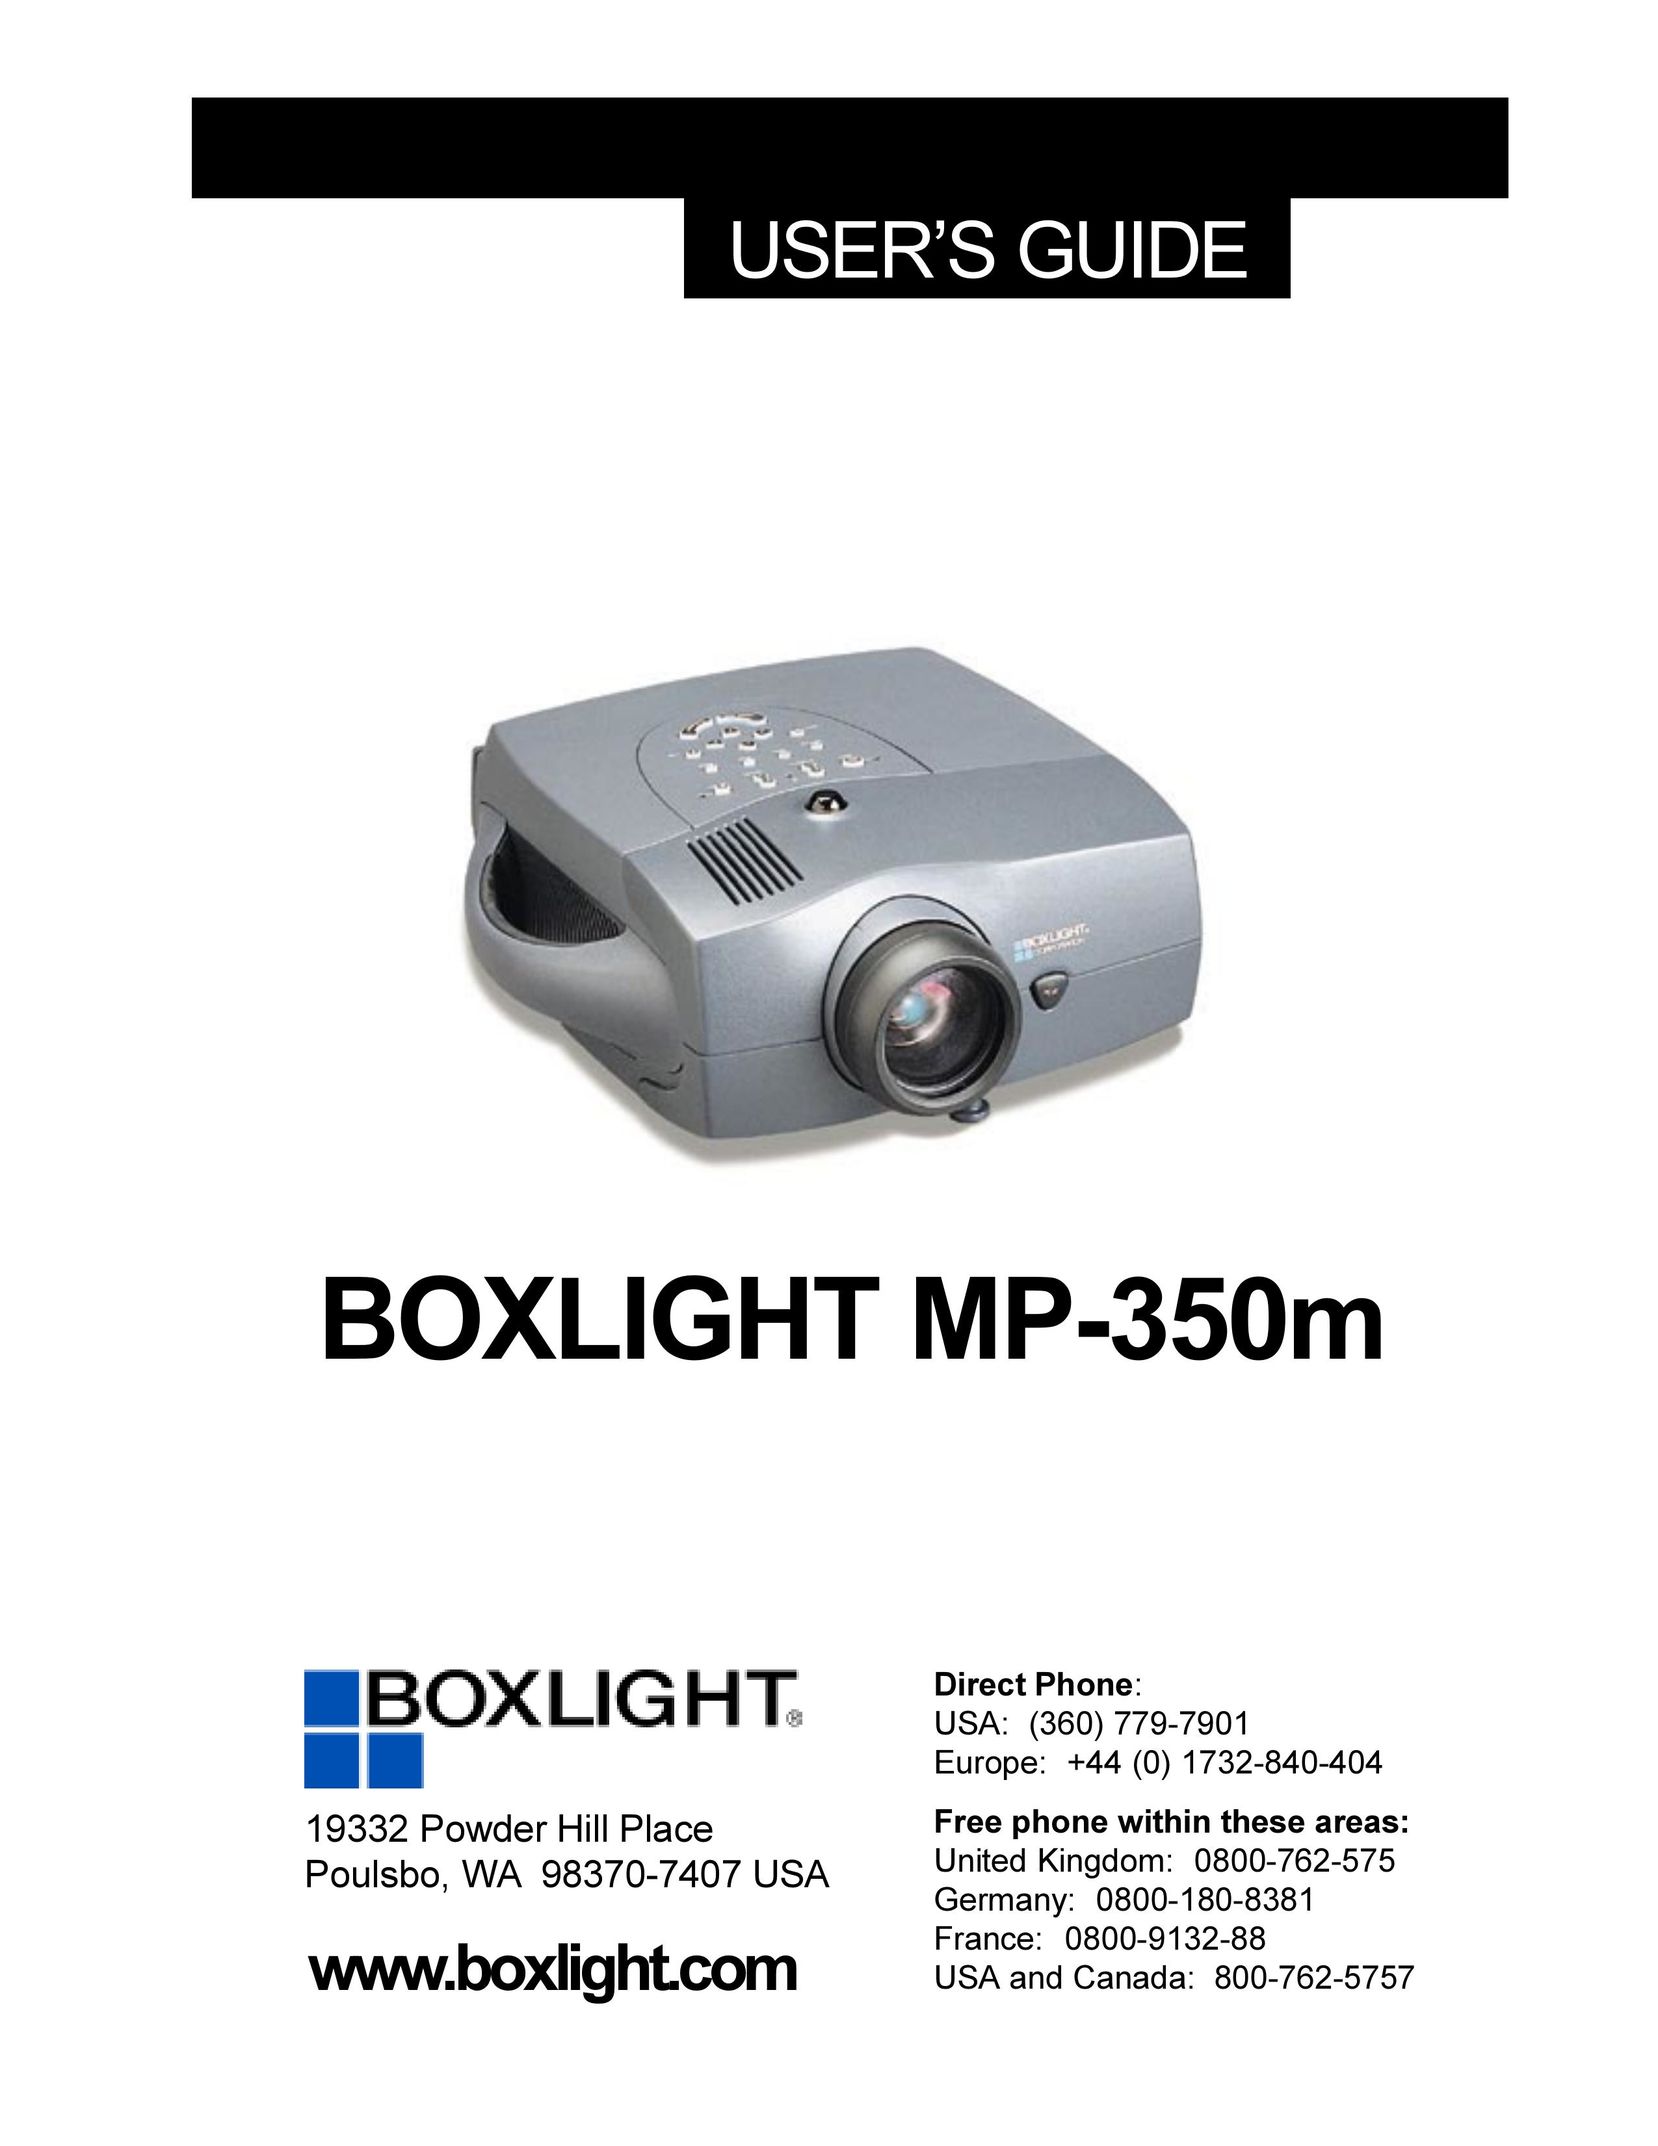 BOXLIGHT MP-350m Projector User Manual